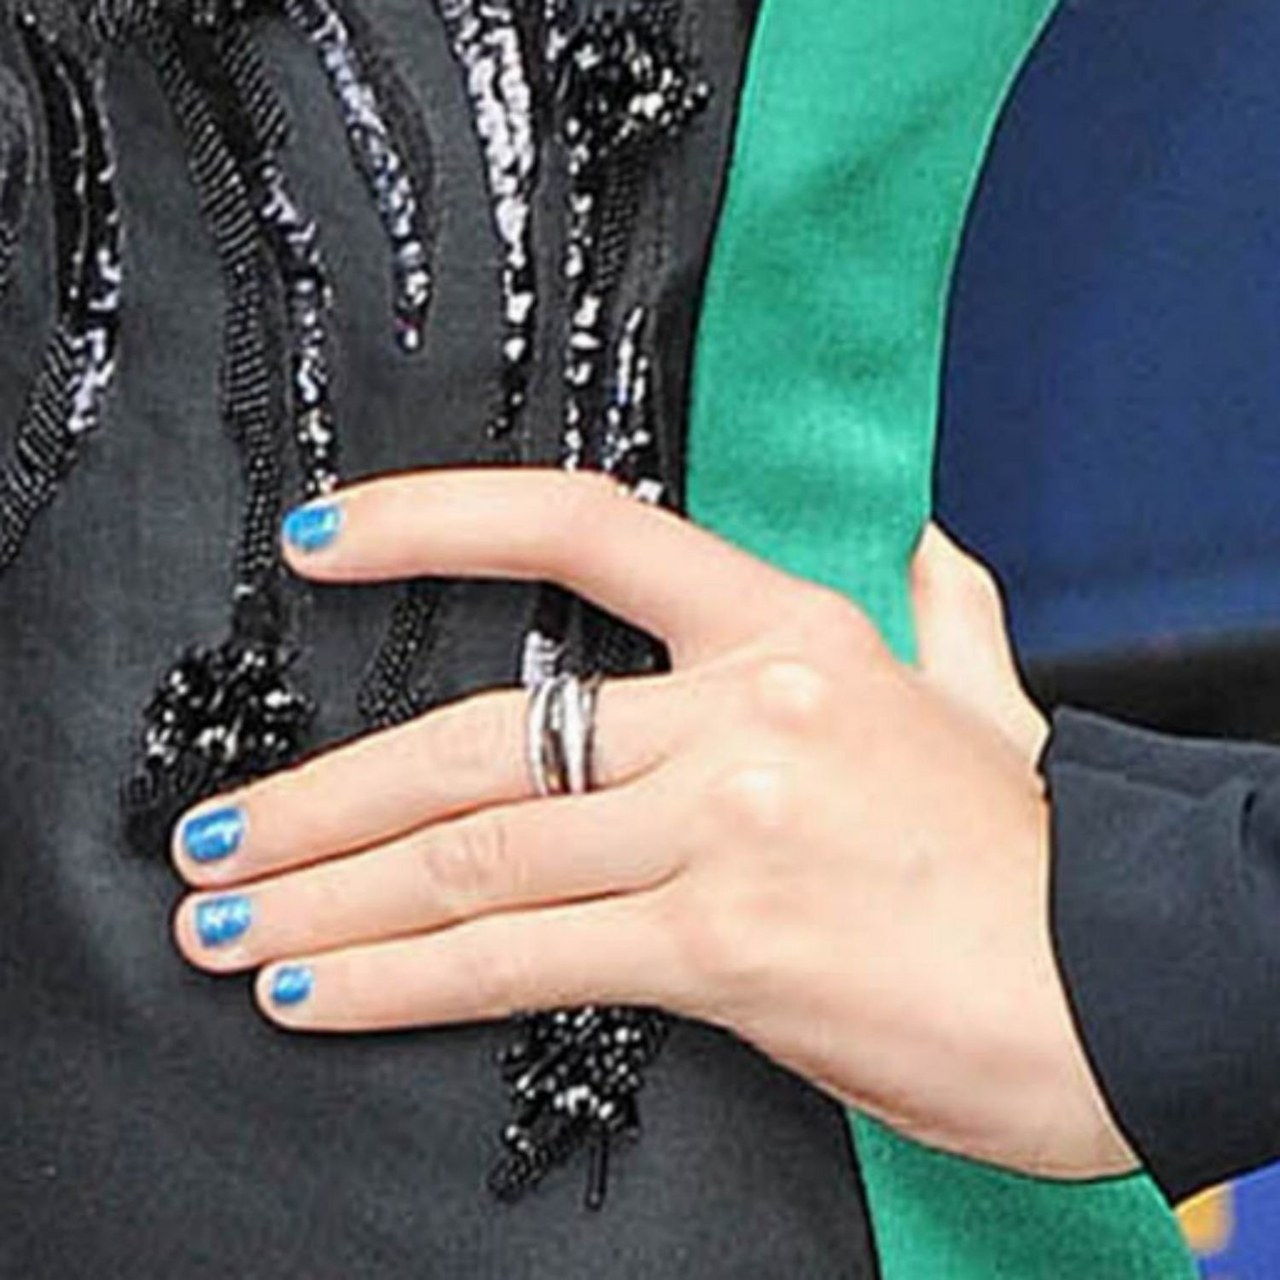 Taylor swift blue nail polish zoom